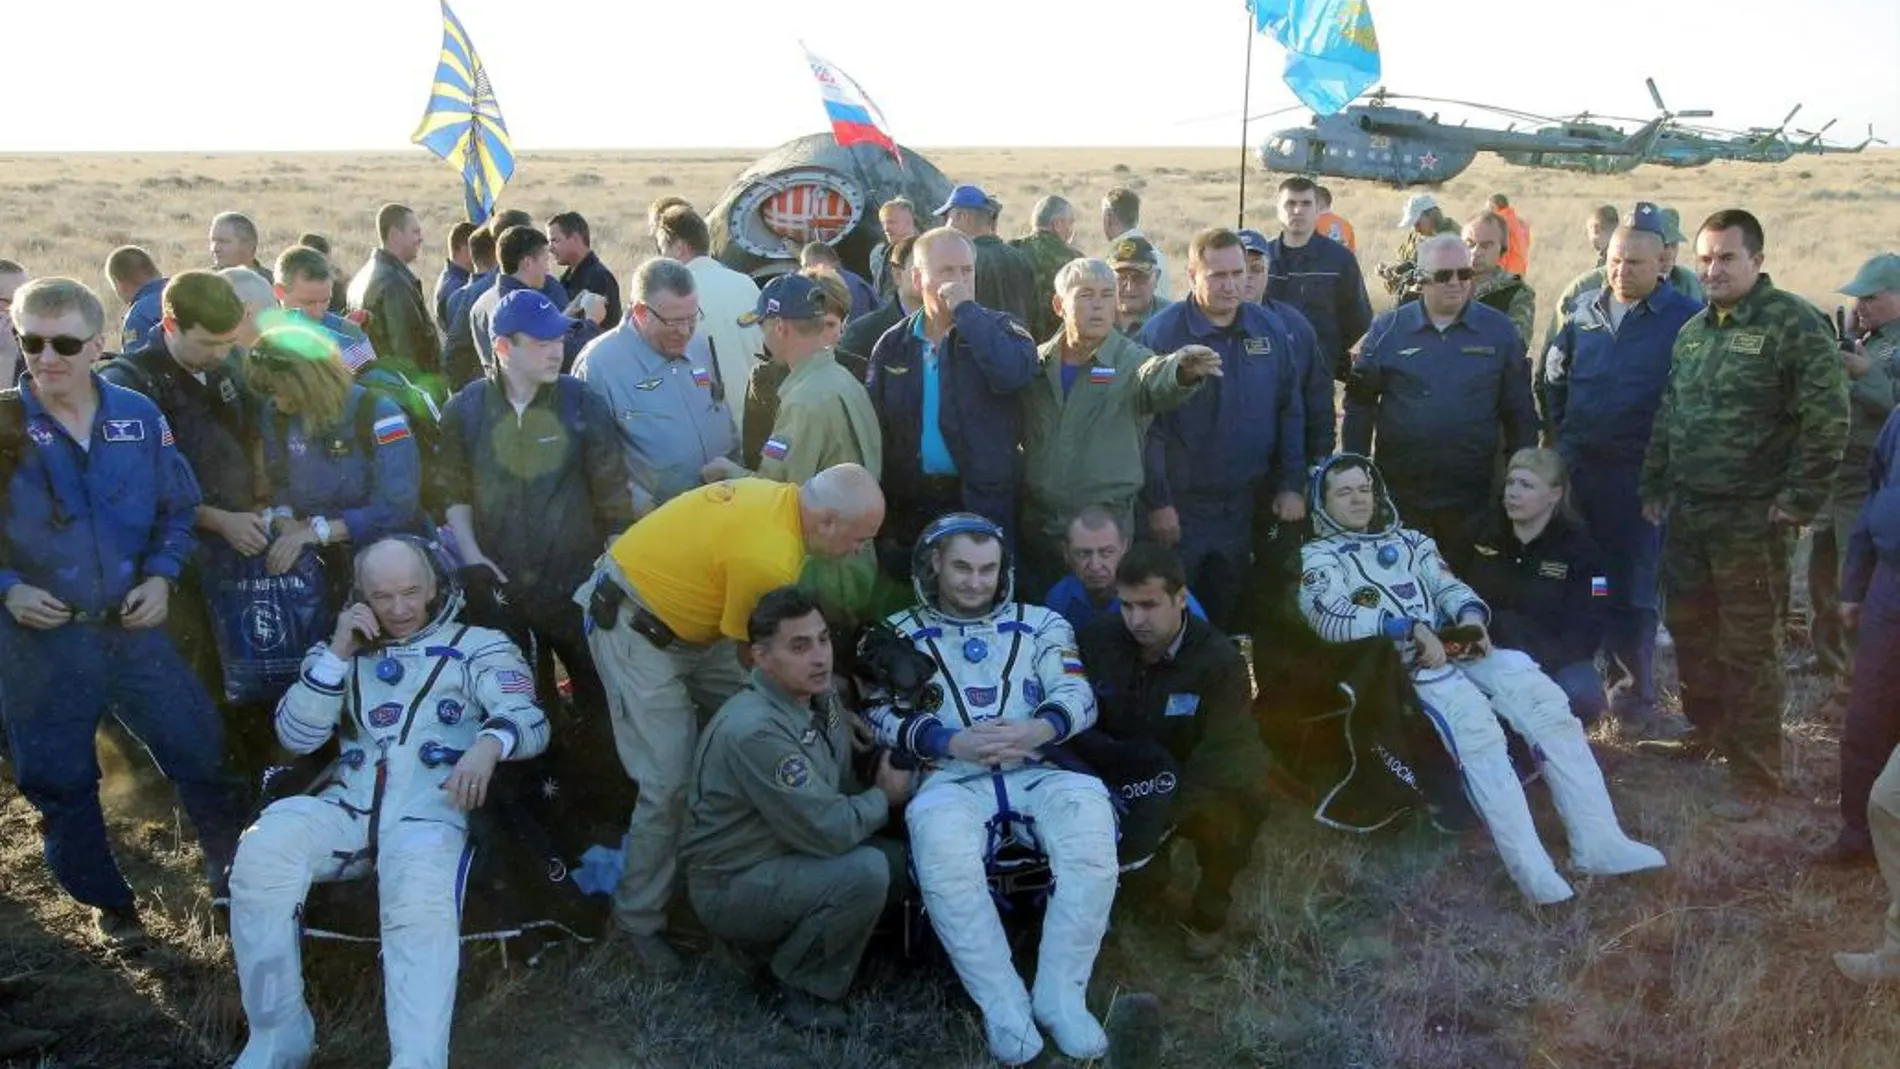 Los cosmonautas rusos Alexei Ovchinin (c), Oleg Skripochka (i) y el astronauta estadounidense de la NASA Jeffrey Williams (d) son vistos luego de aterrizar a unos 150 km al este de la ciudad de Dzhezkazgan (Kazajistán) hoy, miércoles 07 de septiembre de 2016. La tripulación regresa después de 172 días en el espacio